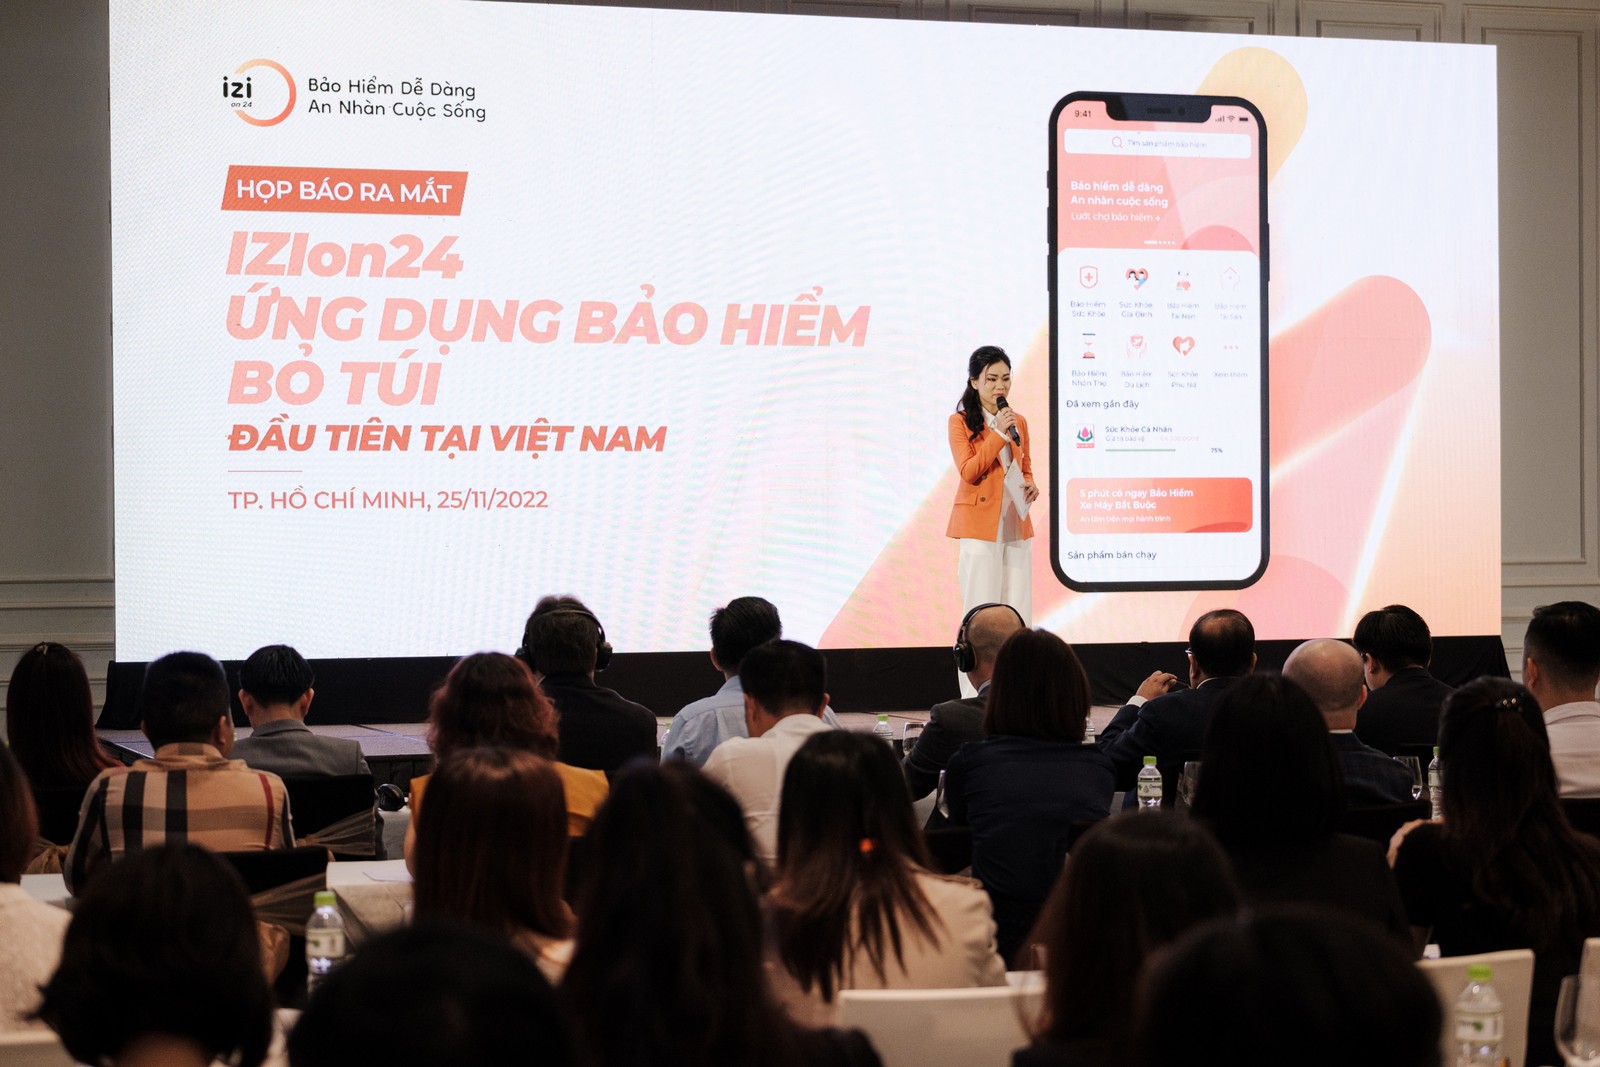 Ideal Life ra mắt ứng dụng bảo hiểm bỏ túi đầu tiên tại Việt Nam